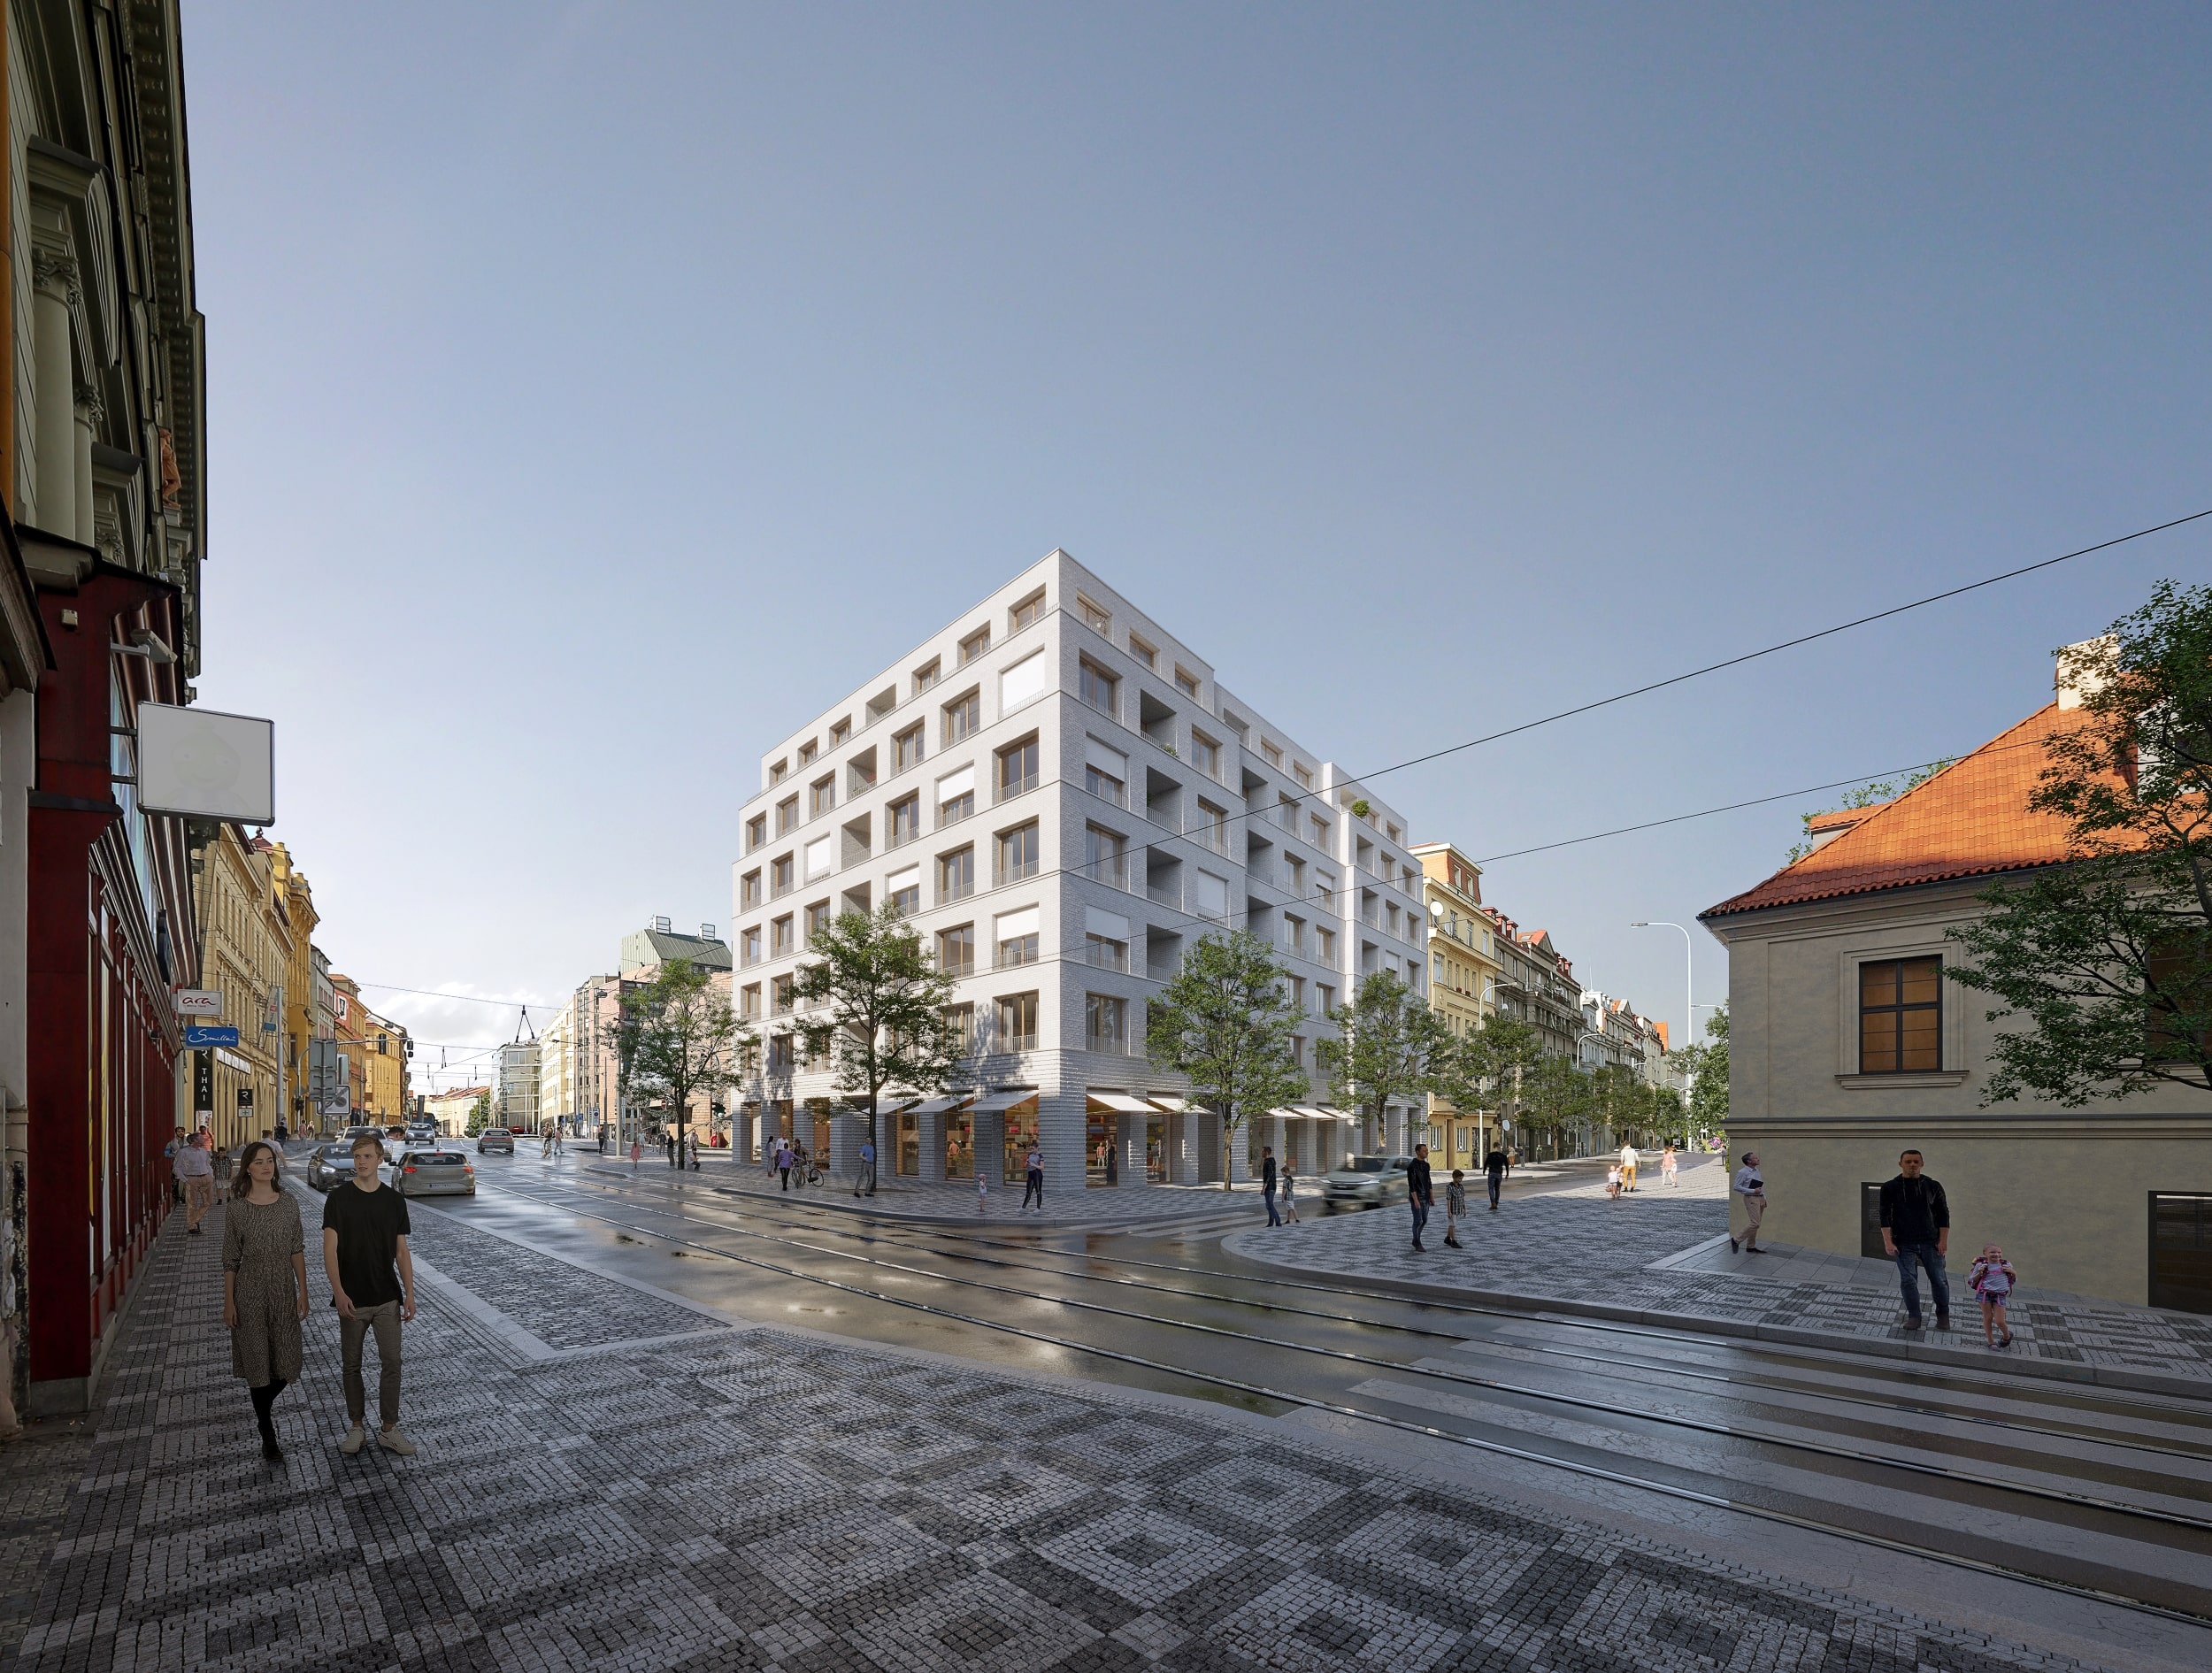 Vítězný návrh městského bytového domu V Botanice, Praha 5, architekt: Atelier bod architekti